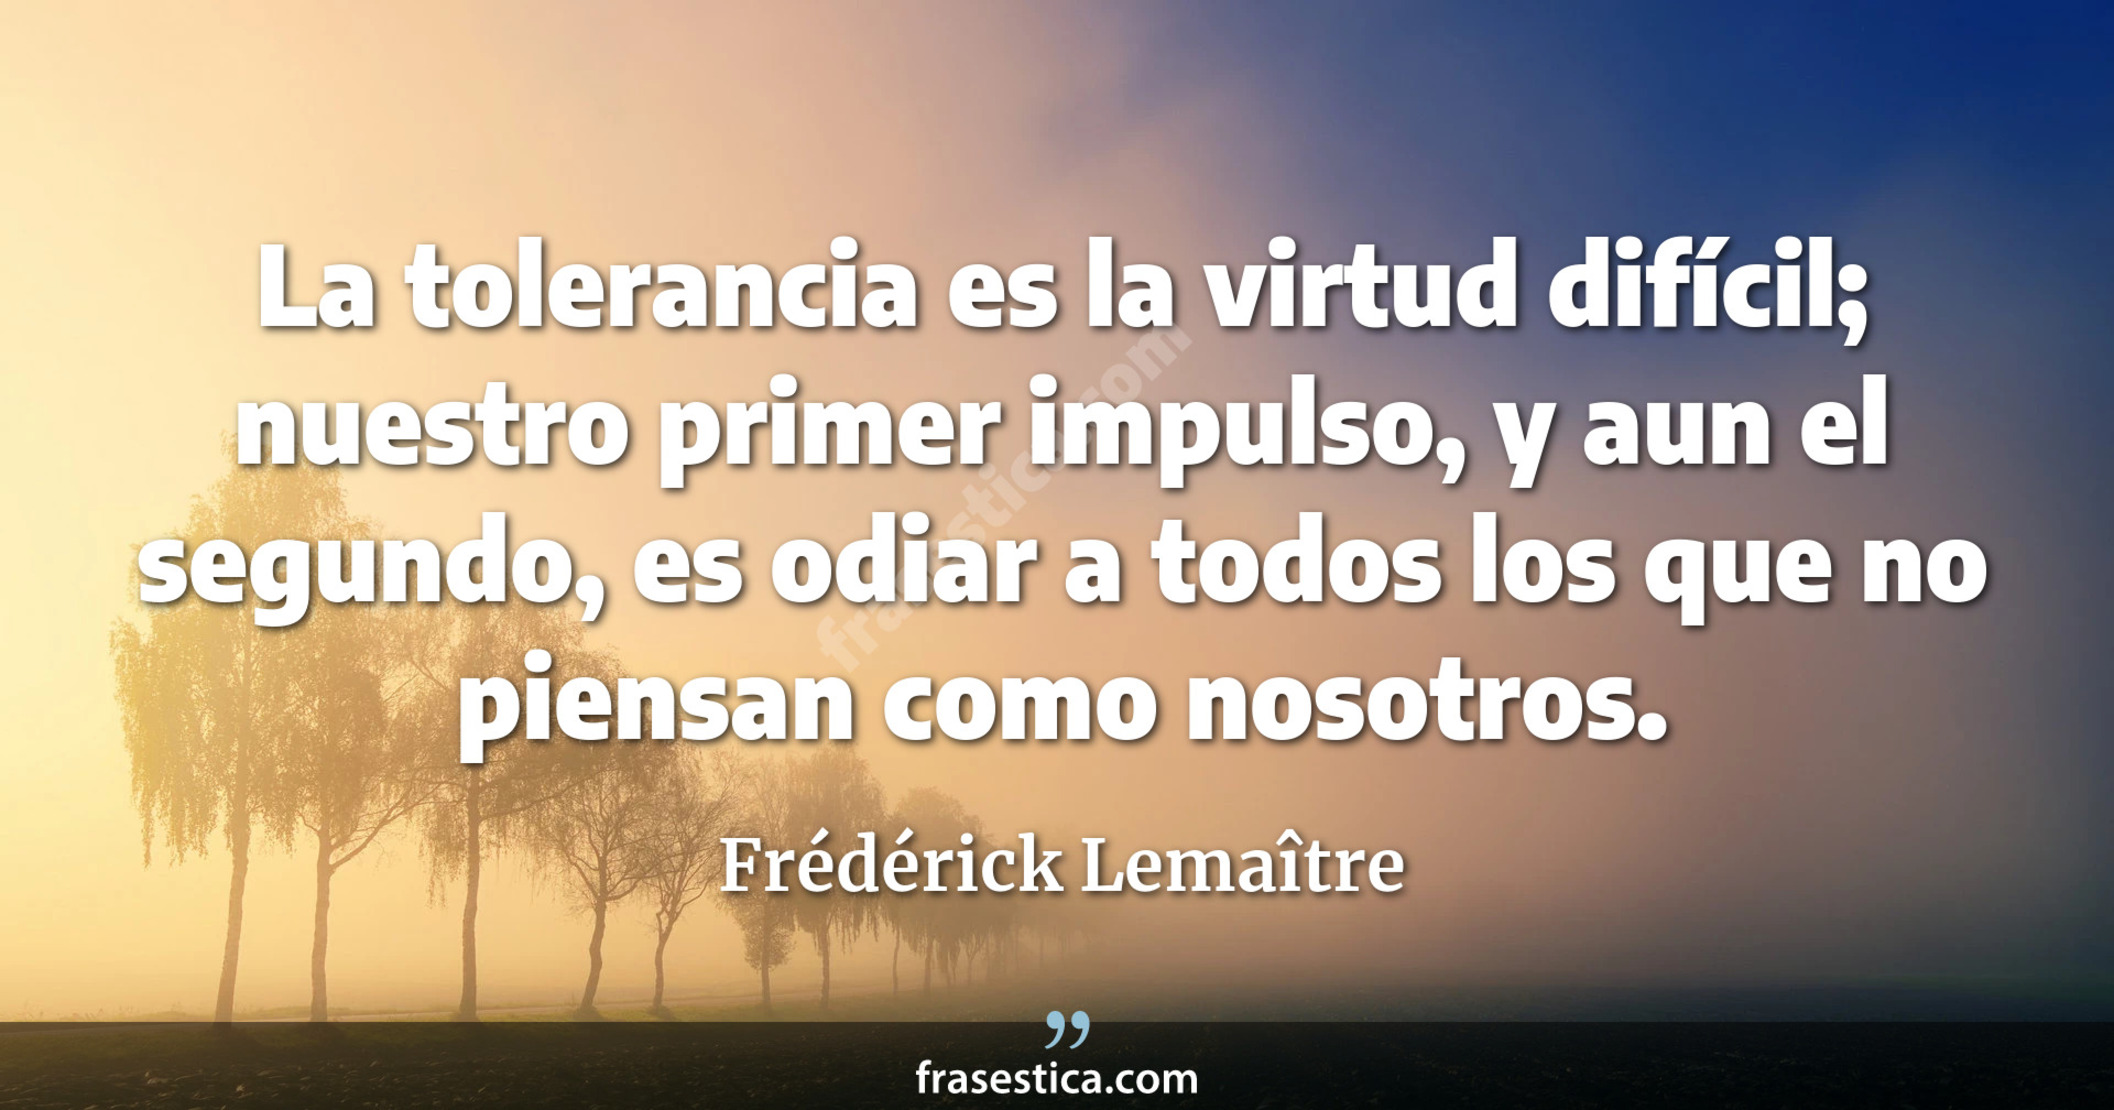 La tolerancia es la virtud difícil; nuestro primer impulso, y aun el segundo, es odiar a todos los que no piensan como nosotros. - Frédérick Lemaître